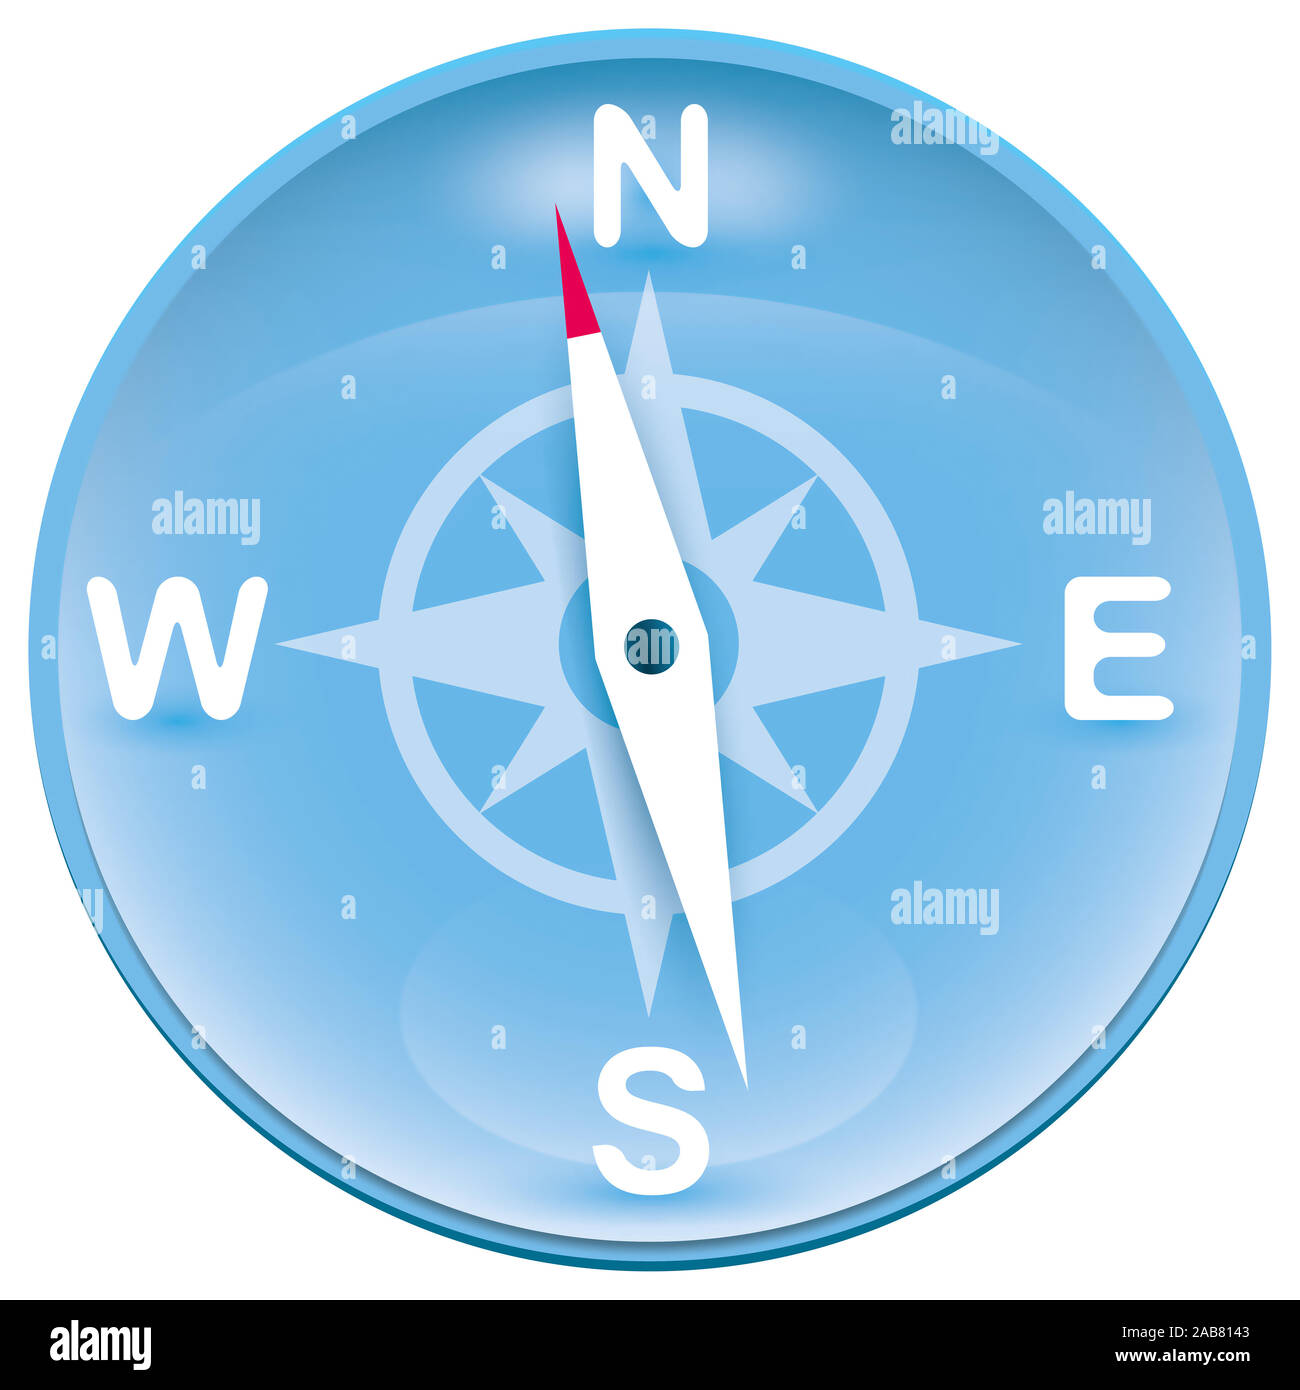 Ein schoener blau-weisser Kompass vor weissem Hintergrund Stock Photo